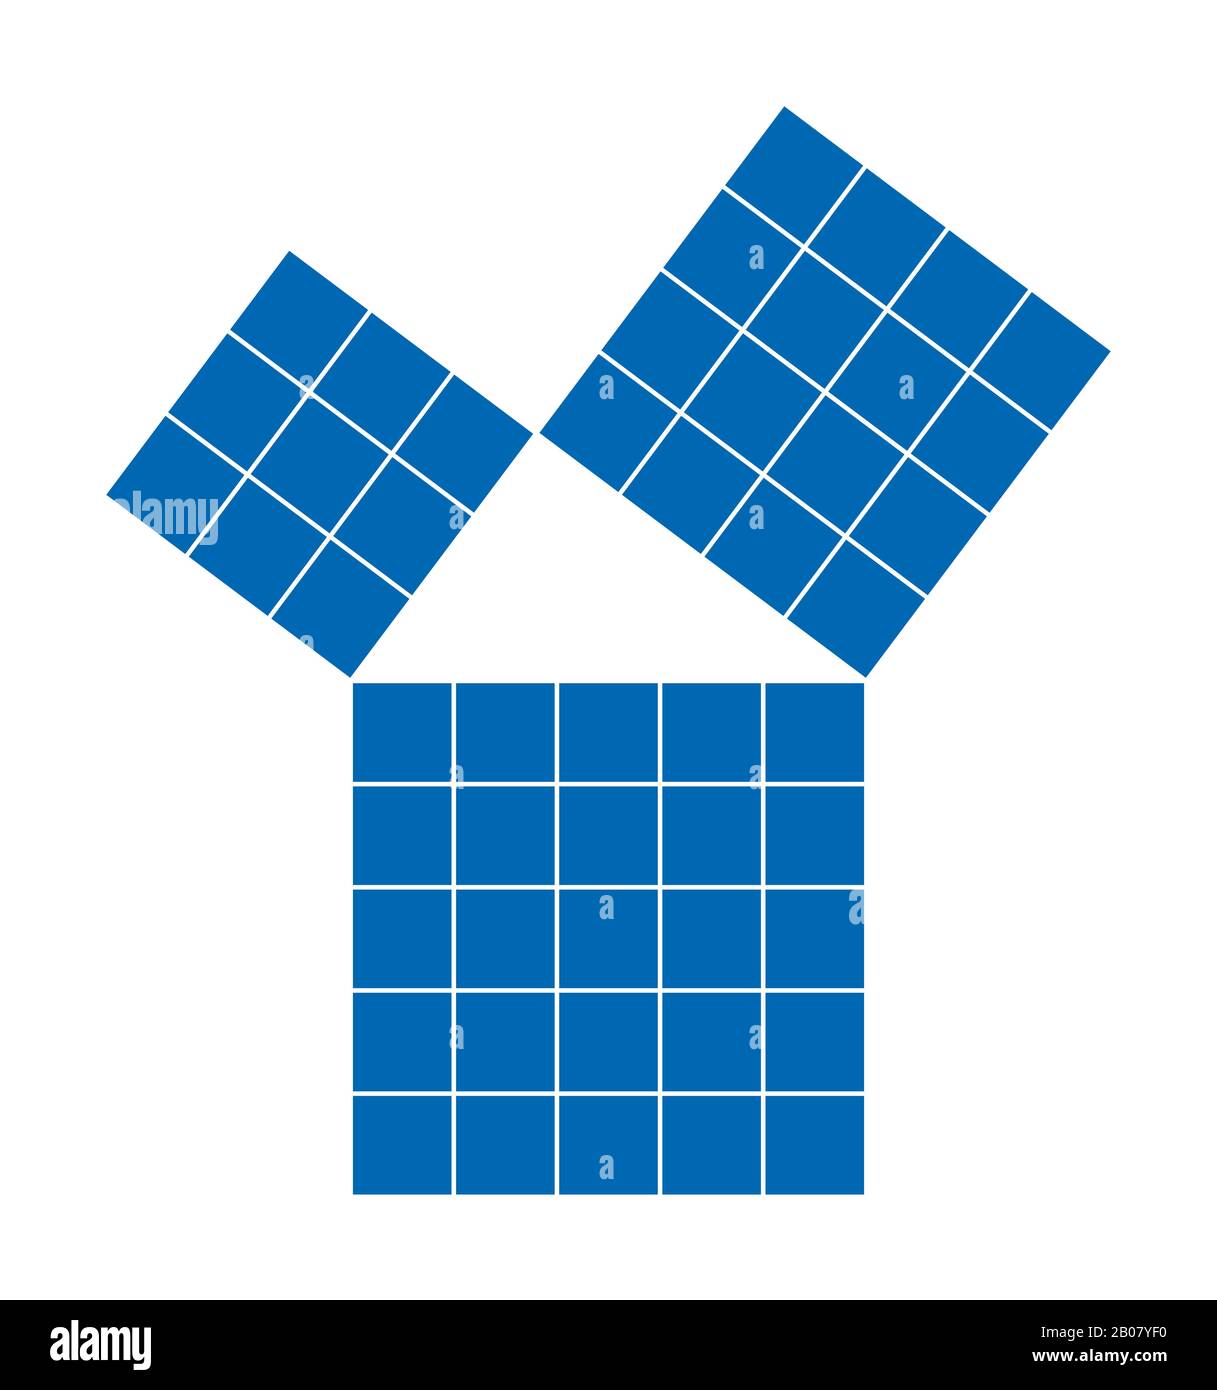 Teorema pitagórico mostrado con cuadrados azules subdivididos. Teorema de Pitágoras. Relación de lados del triángulo derecho. Foto de stock